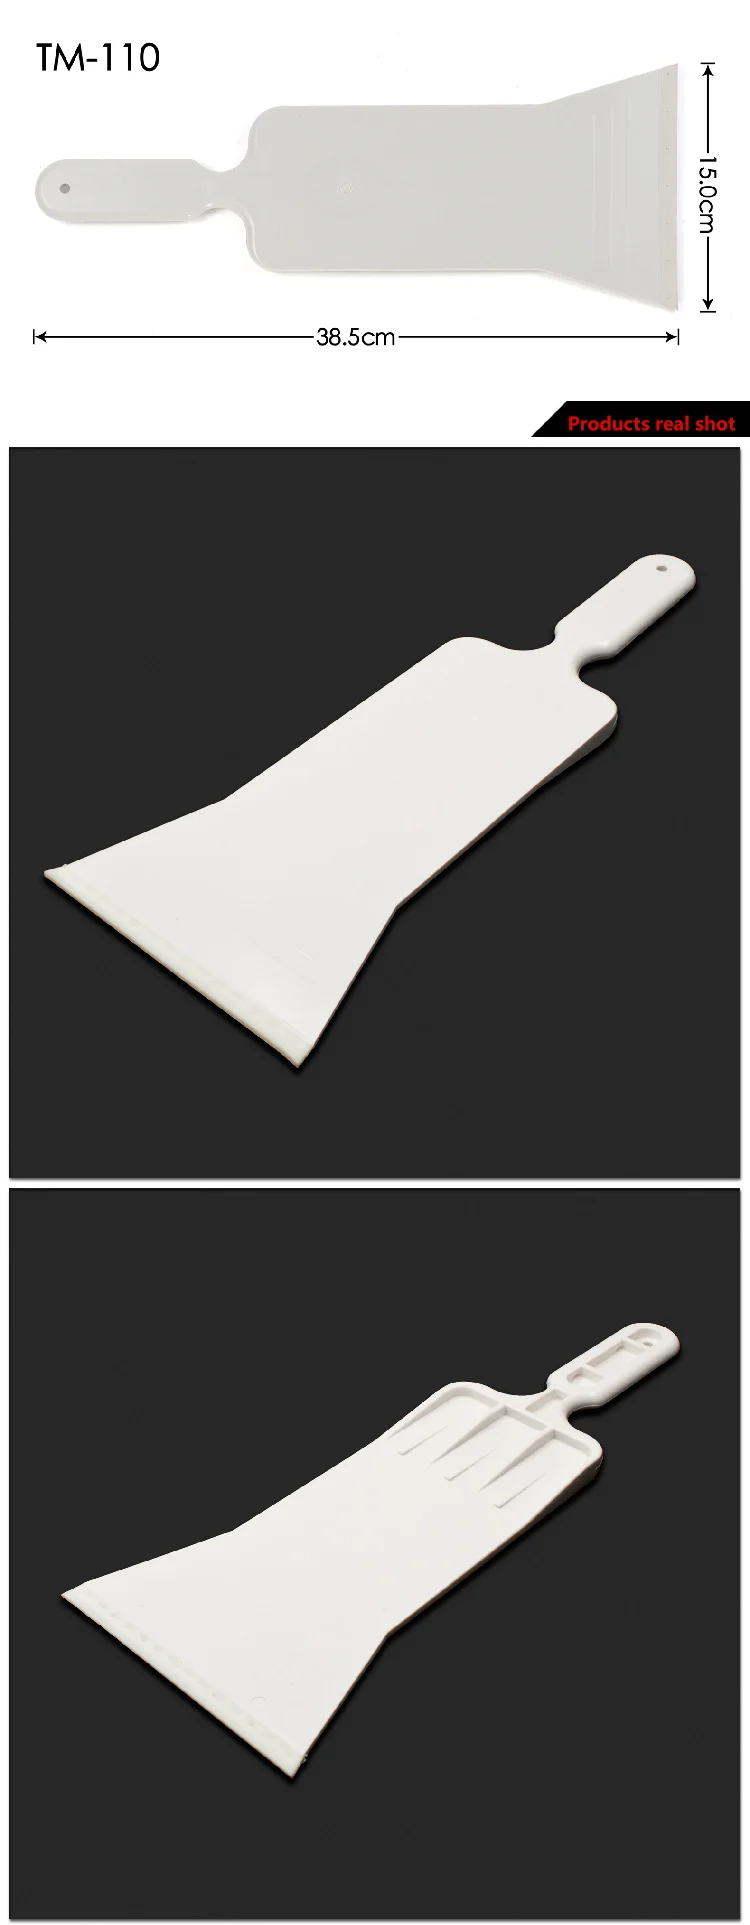 TM-110 пластиковый Ракель мини-СКРЕБОК НАБОР автомобильного инструмента бульдозер белого цвета